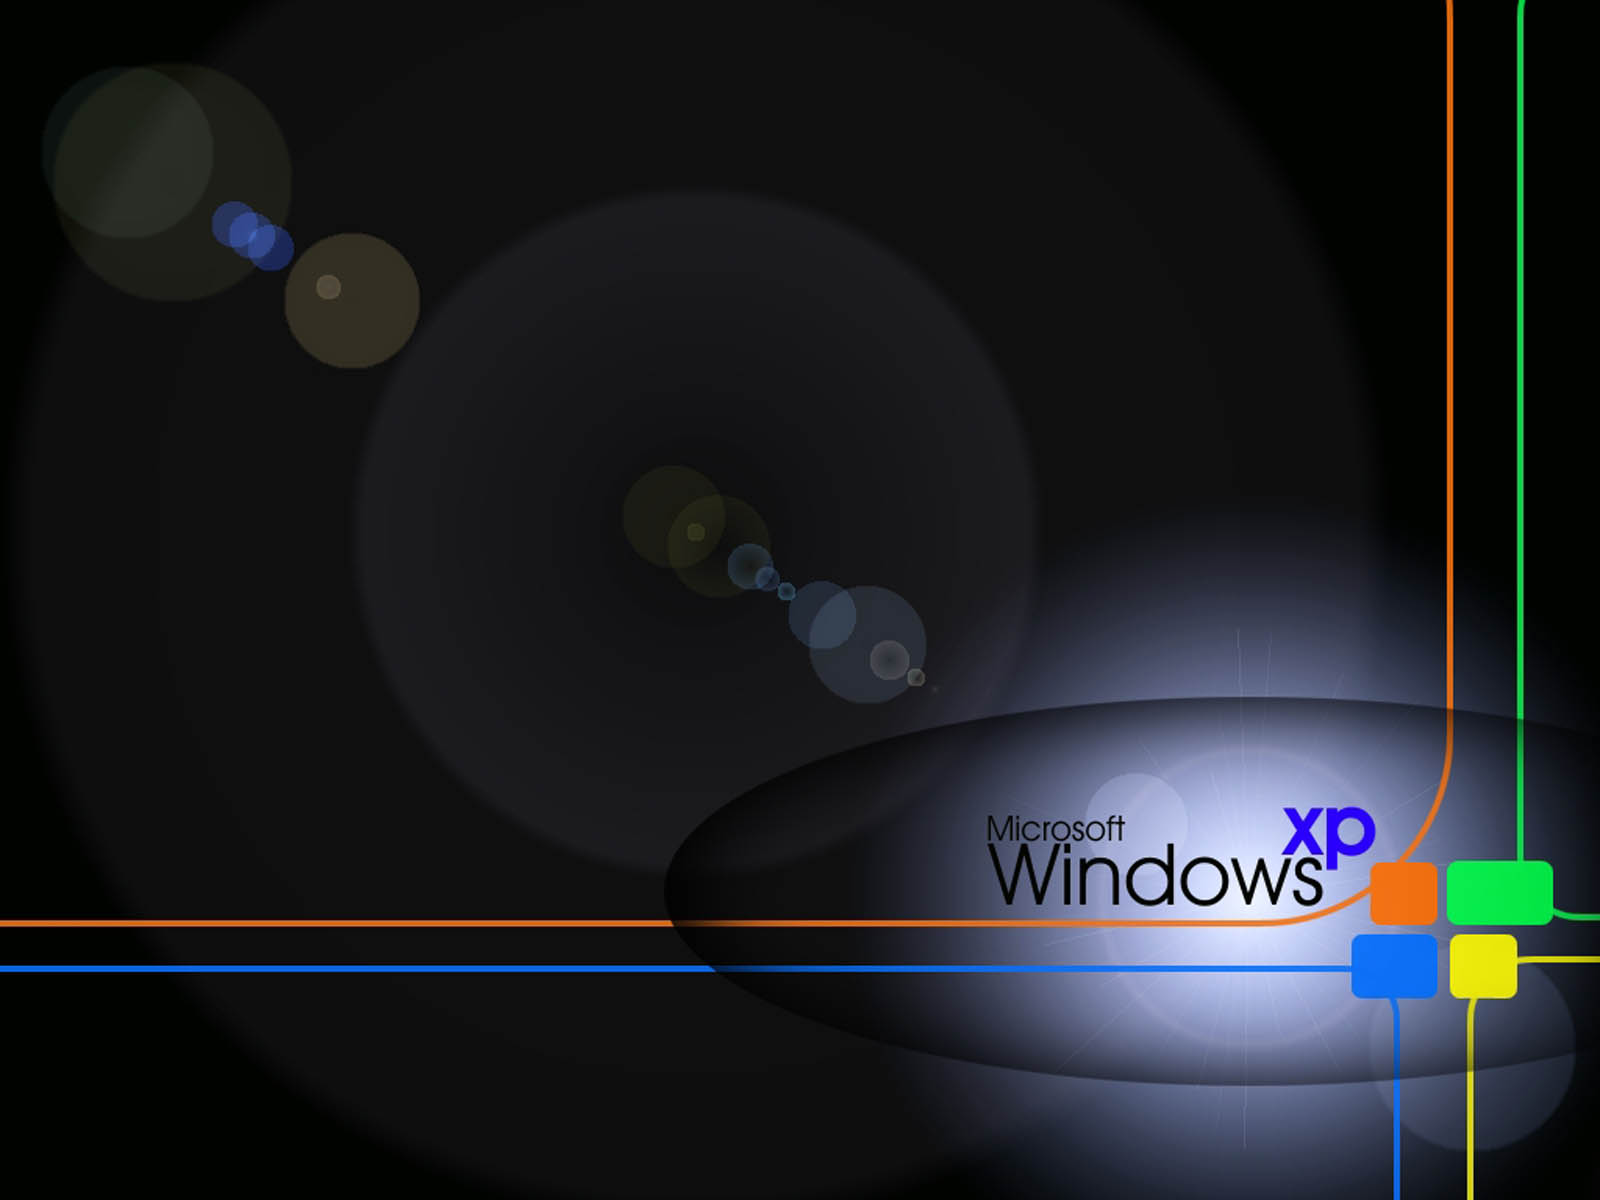 wallpapers: Windows XP Desktop Wallpapers